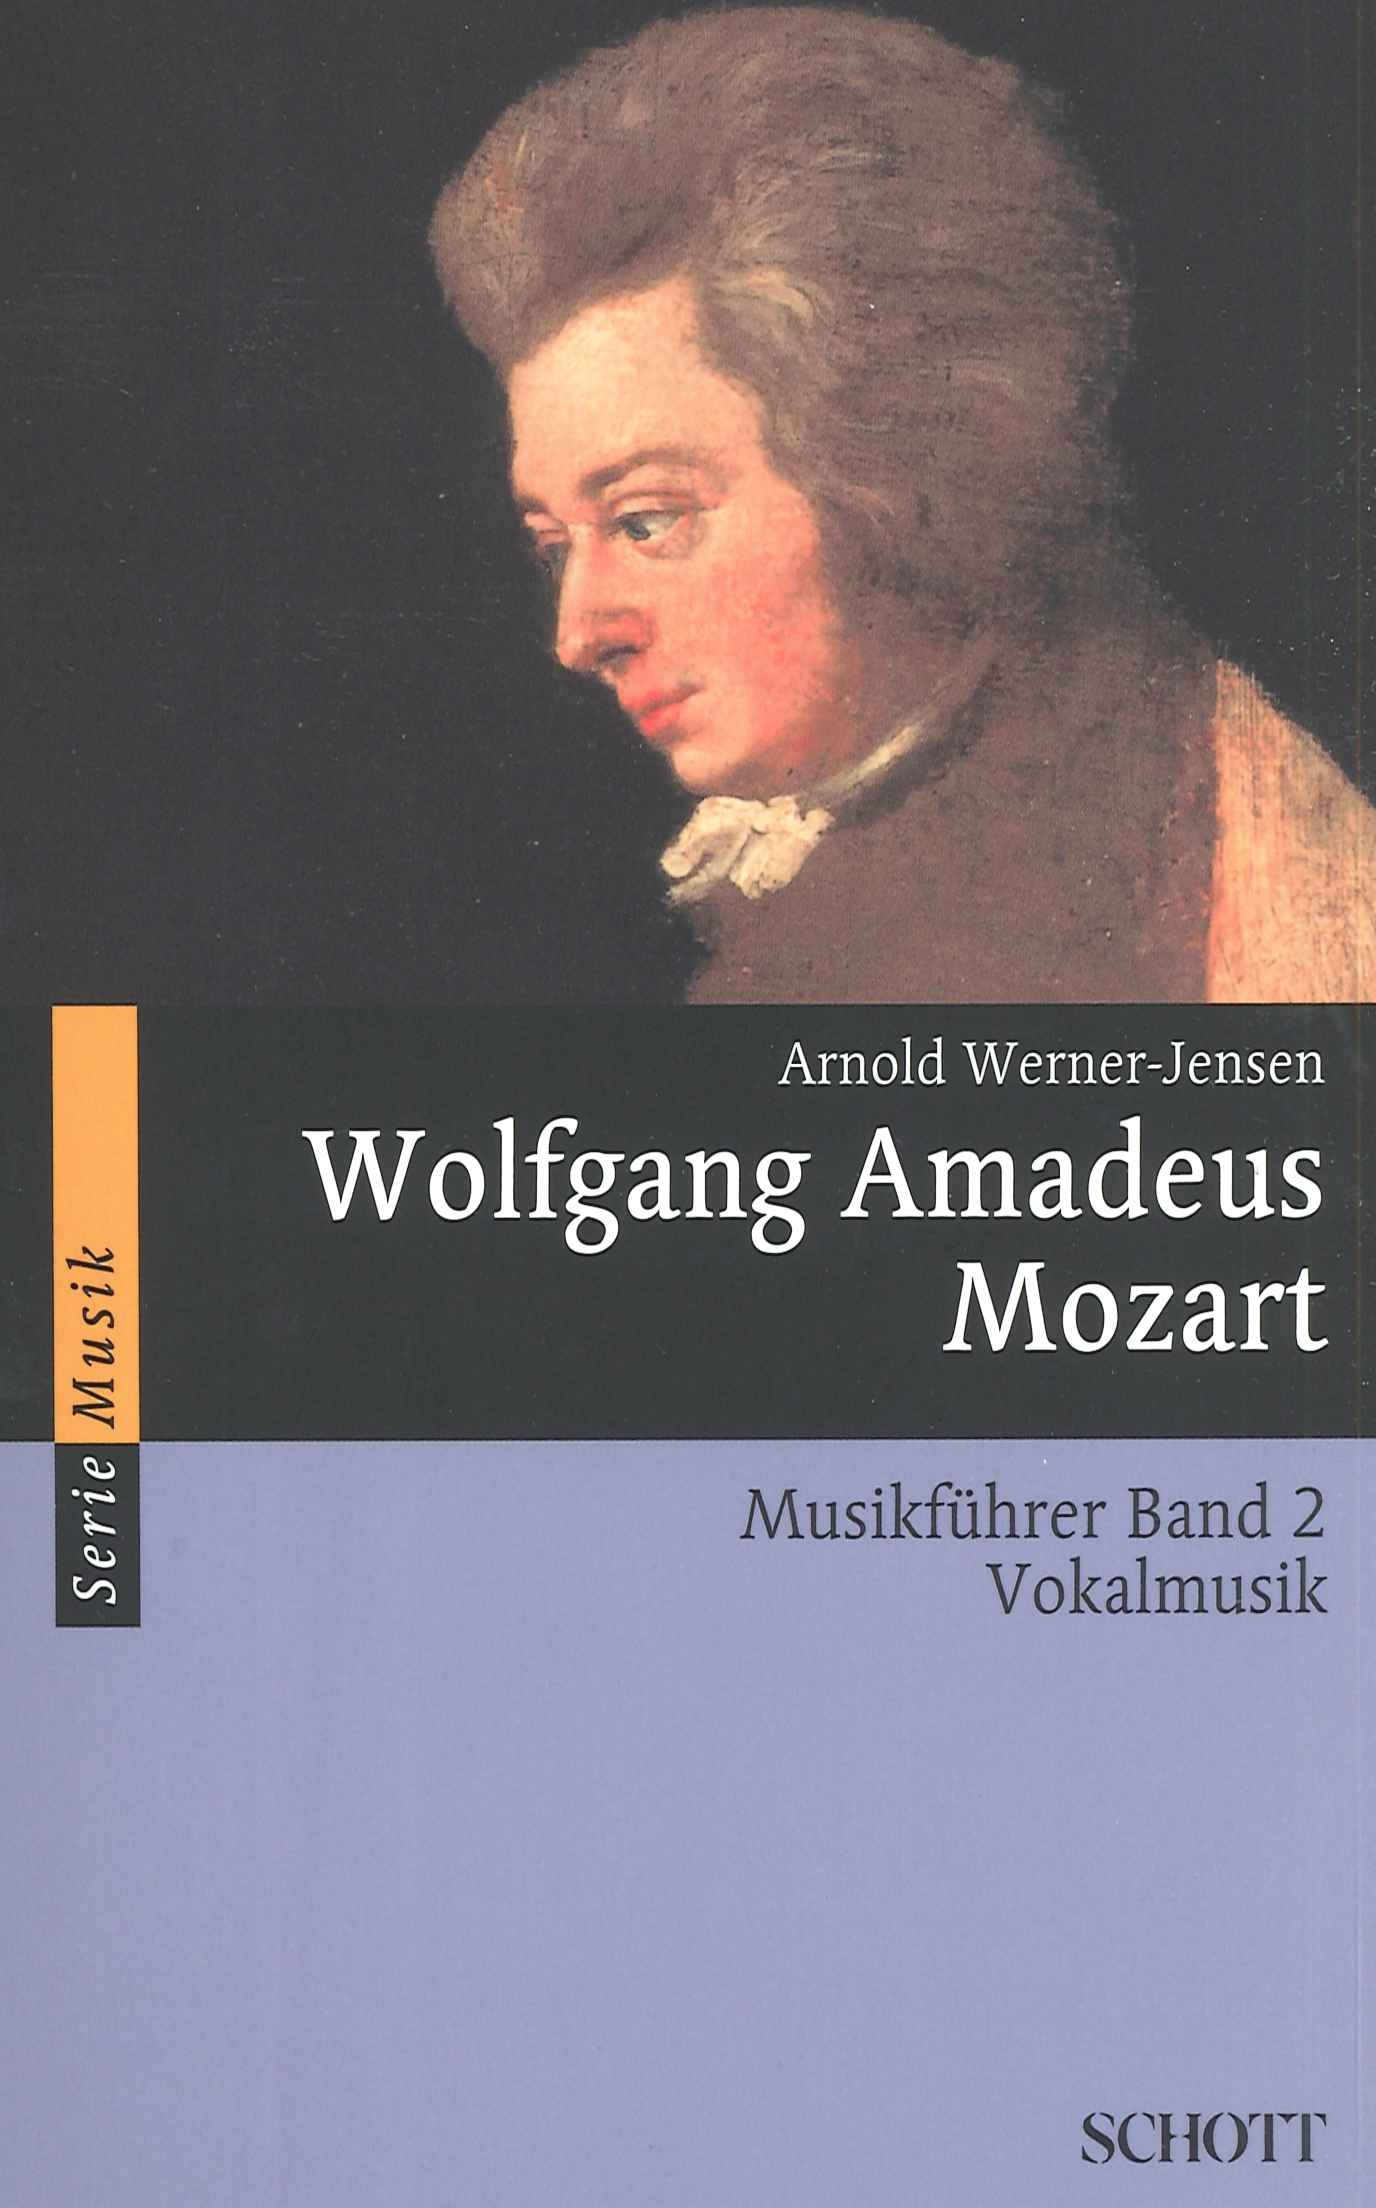 arnold-werner-jensen-wolfgang-amadeus-mozart-musik_0001.JPG